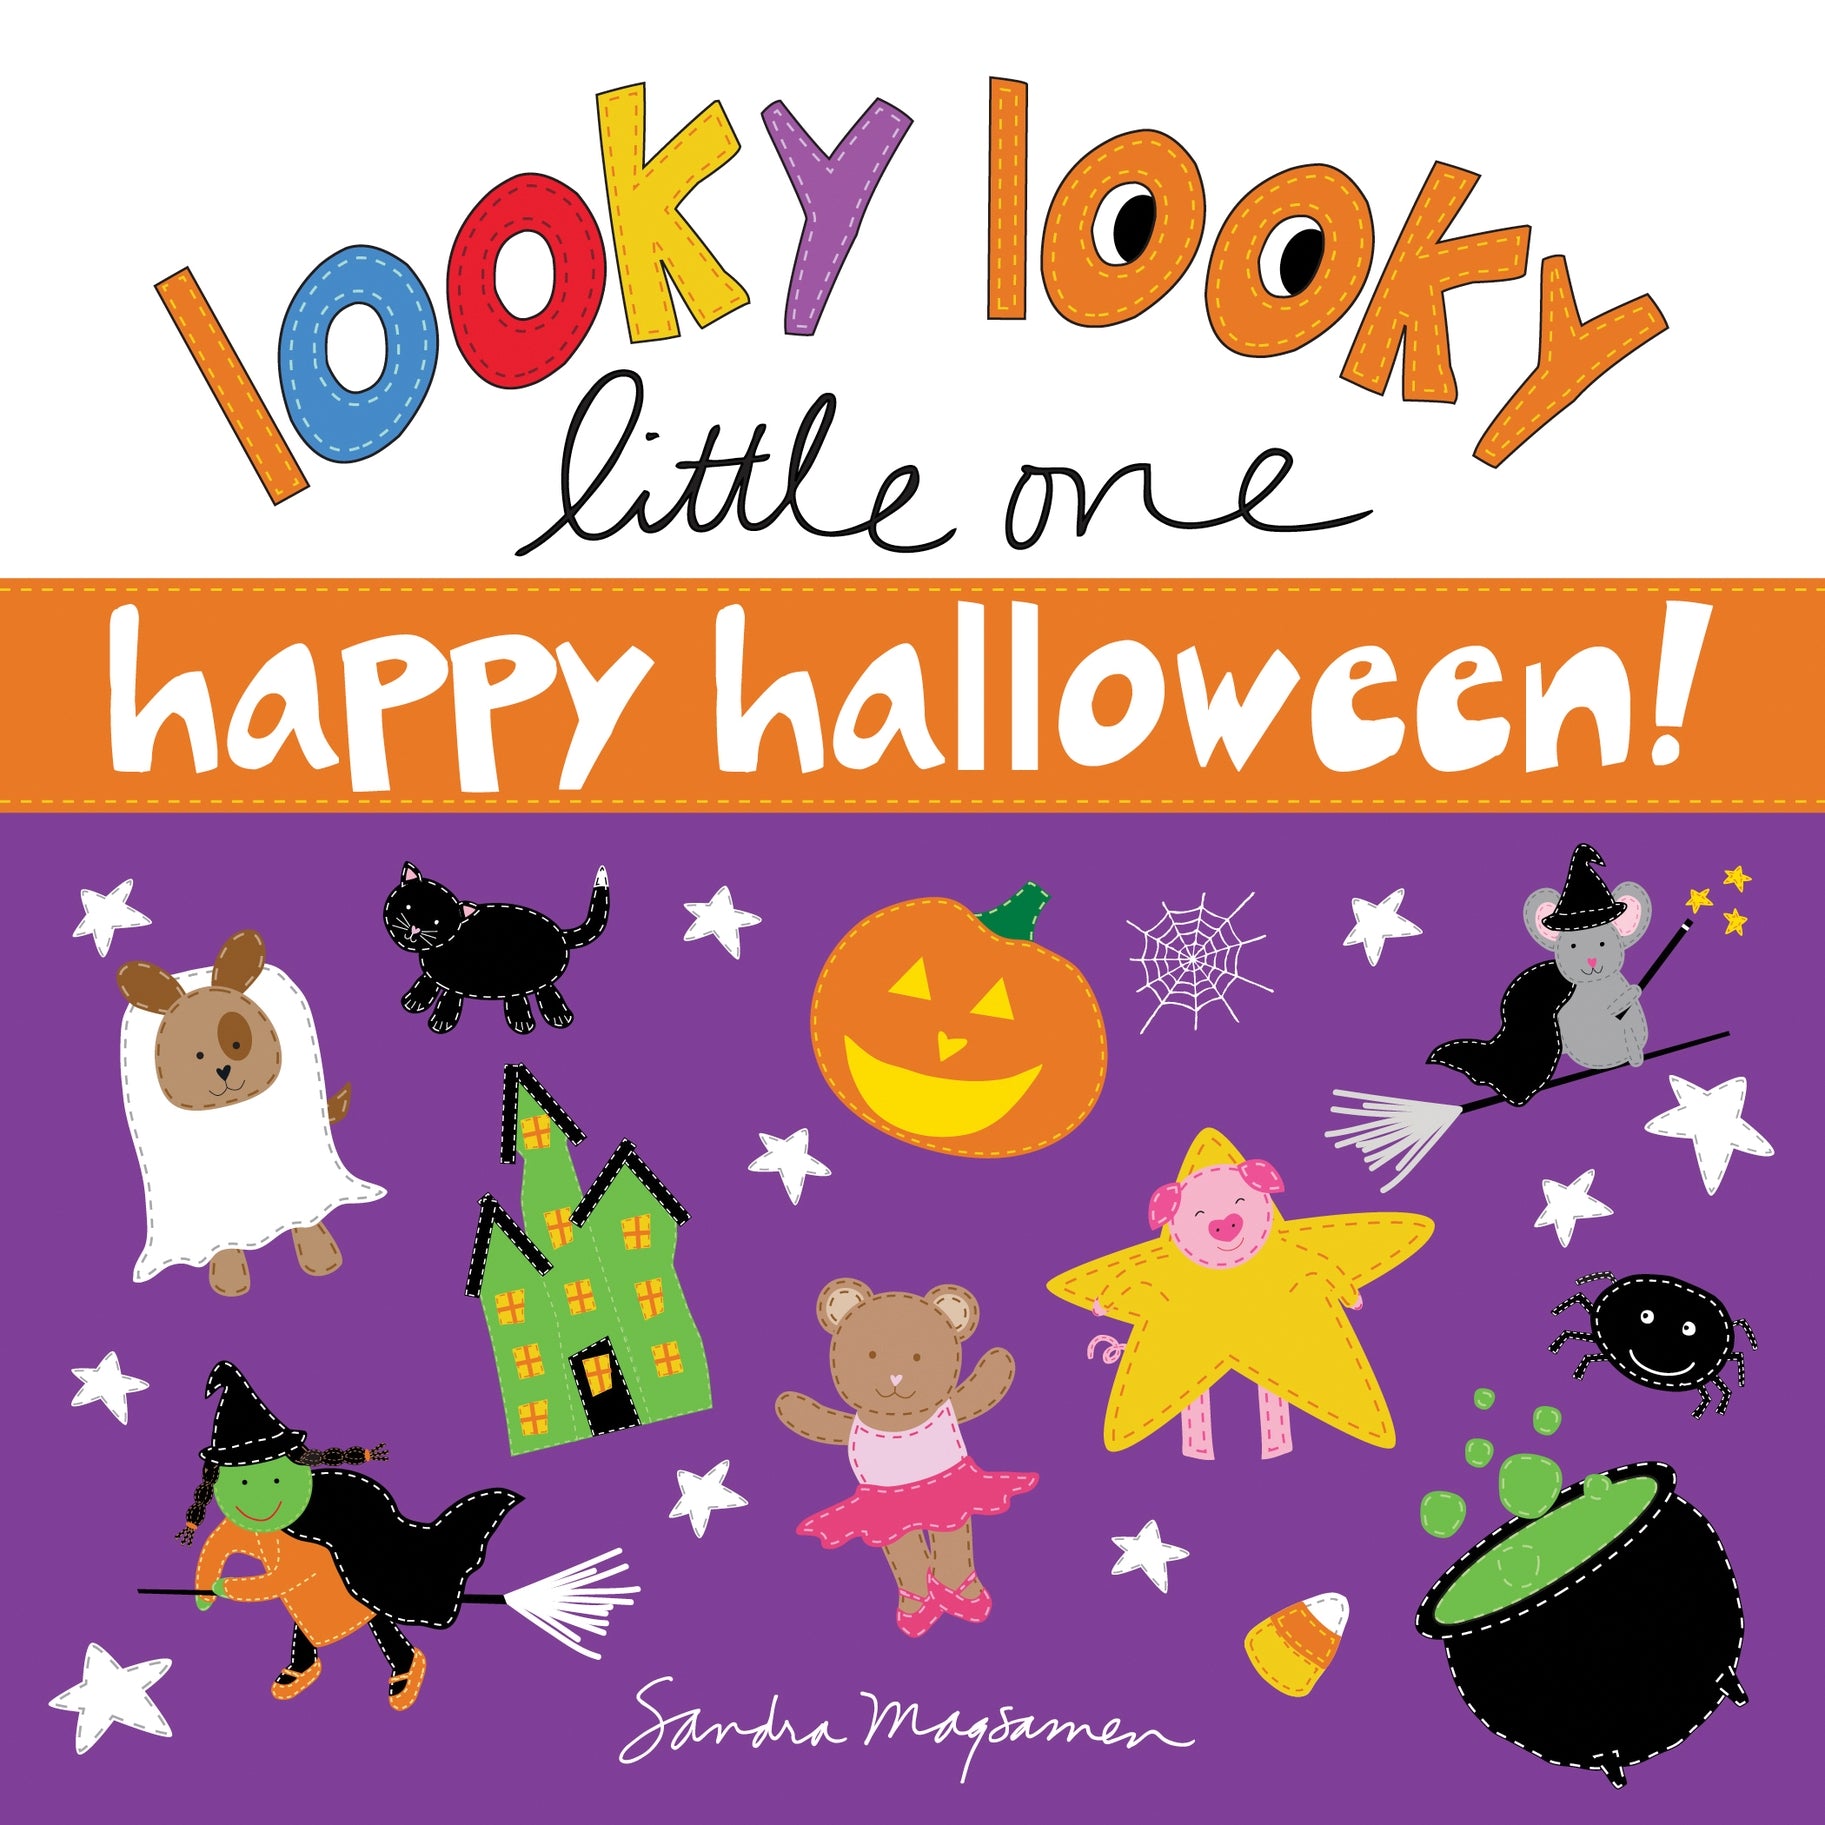 Looky Looky Little One Happy Halloween  - Doodlebug's Children's Boutique